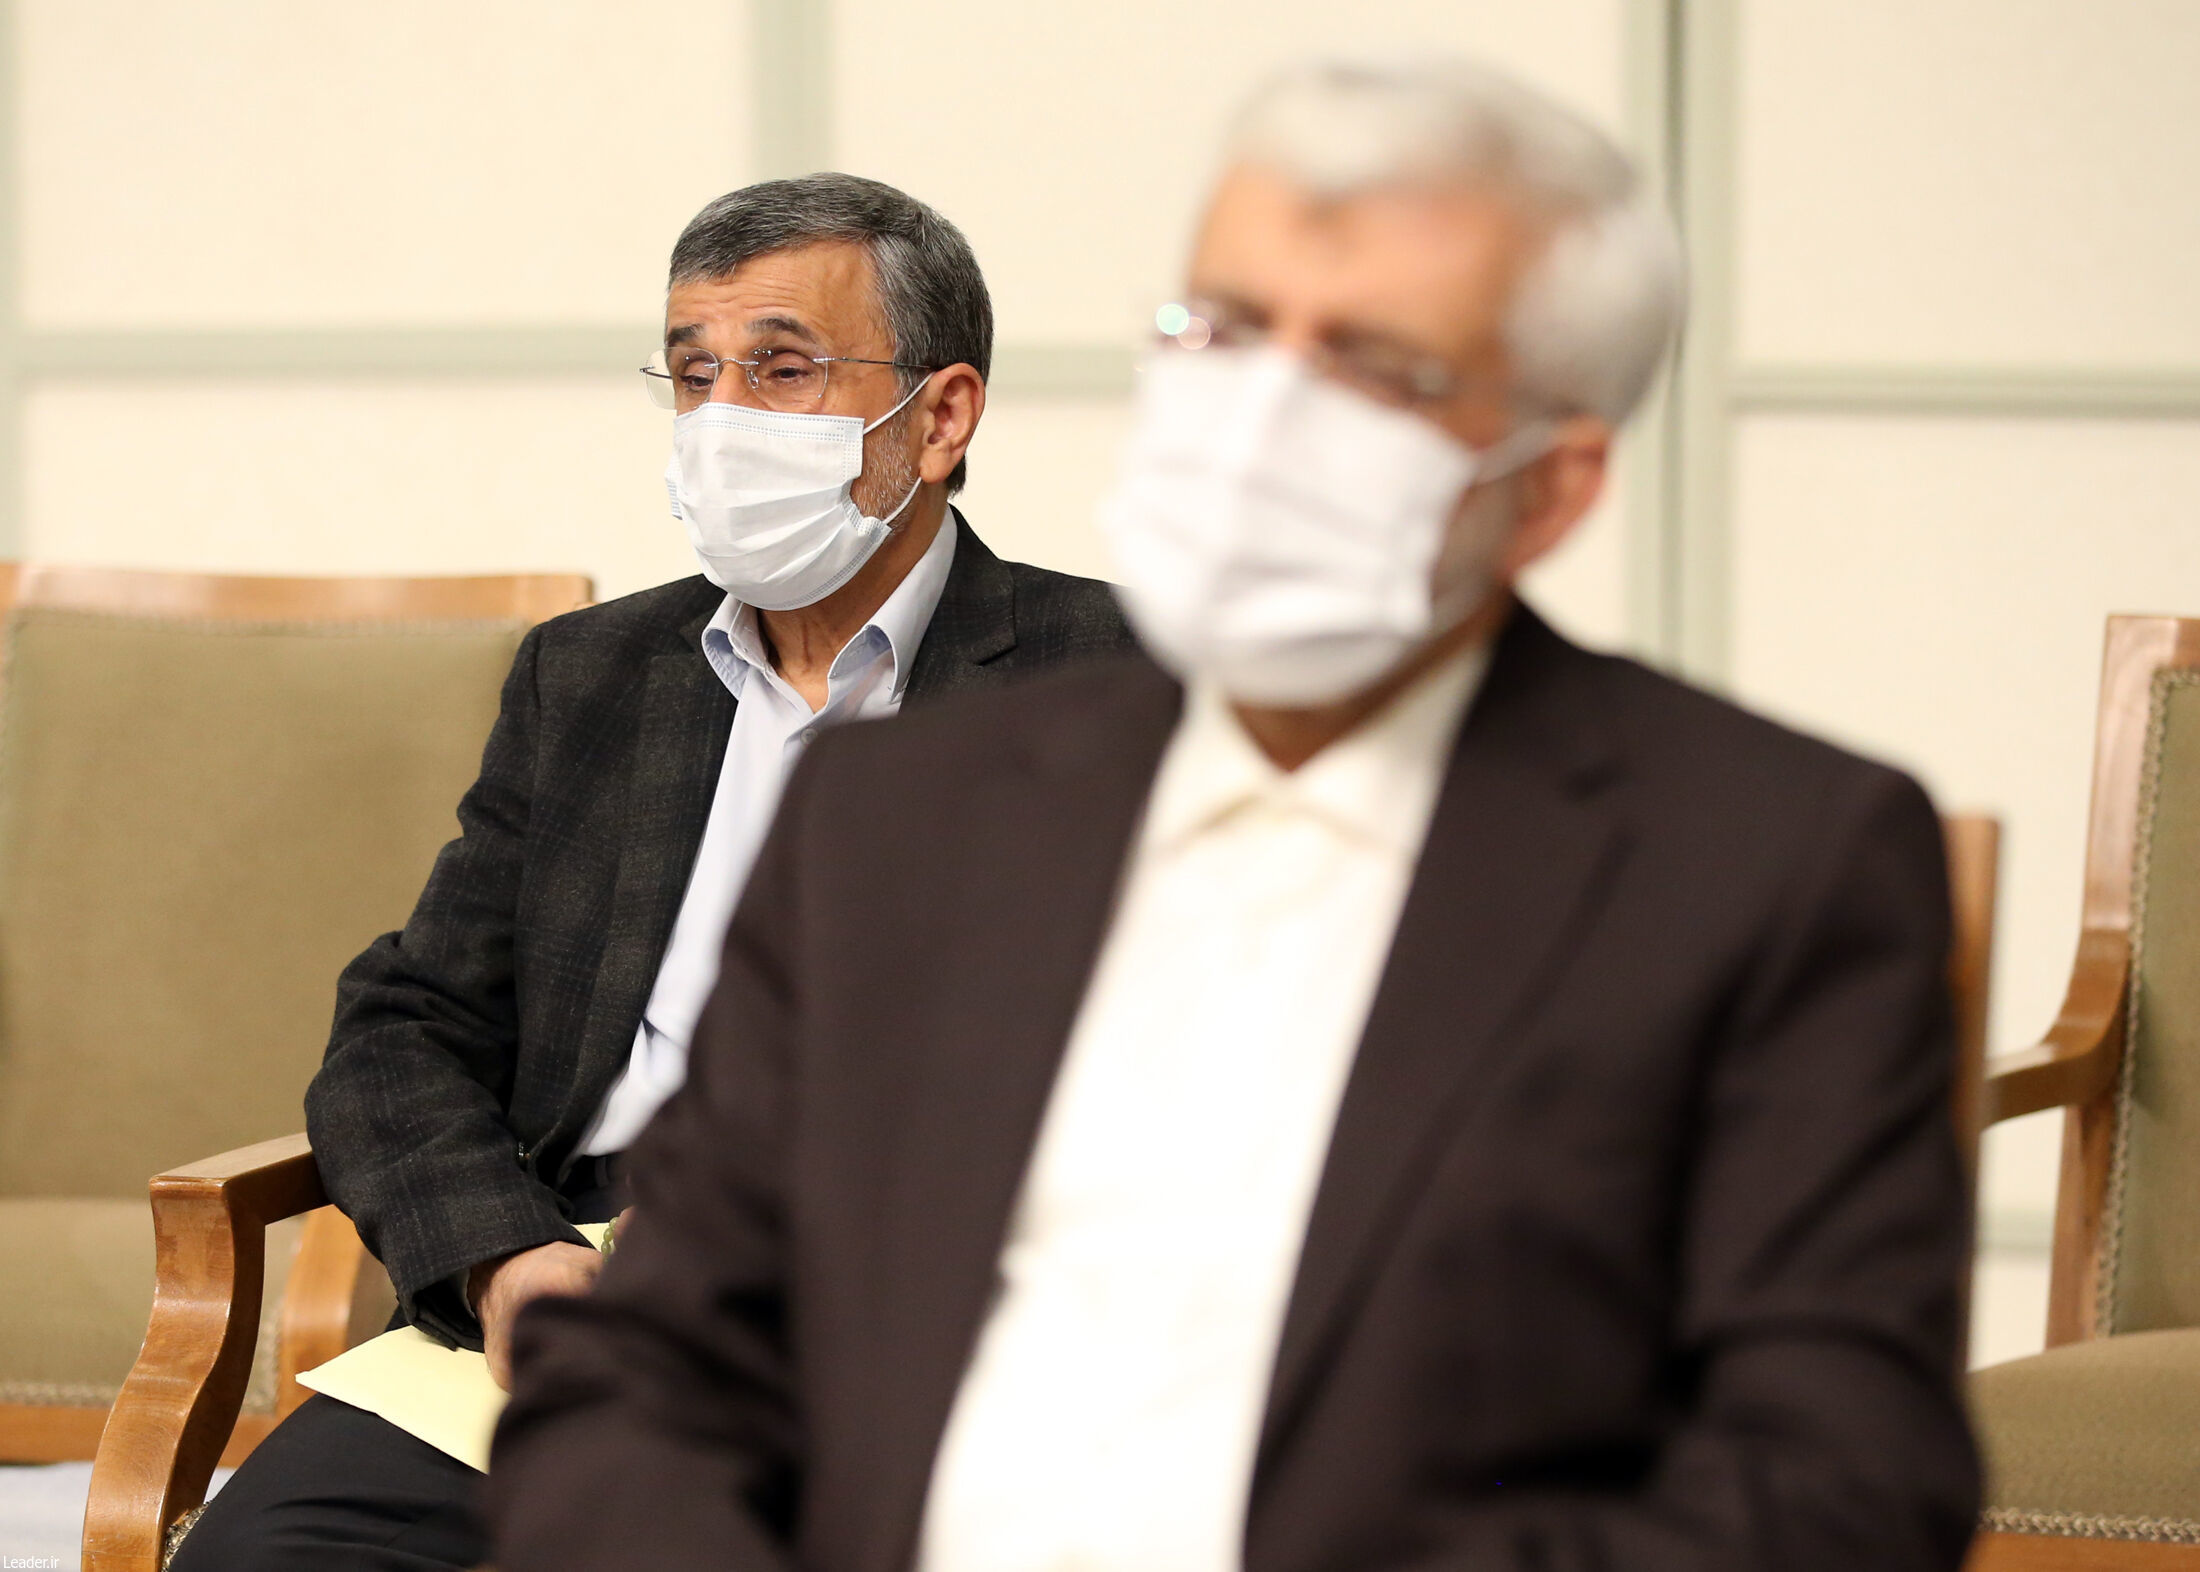 حضور احمدی نژاد در دیدار با رهبر انقلاب/ او پشت سر جلیلی نشست+ عکس